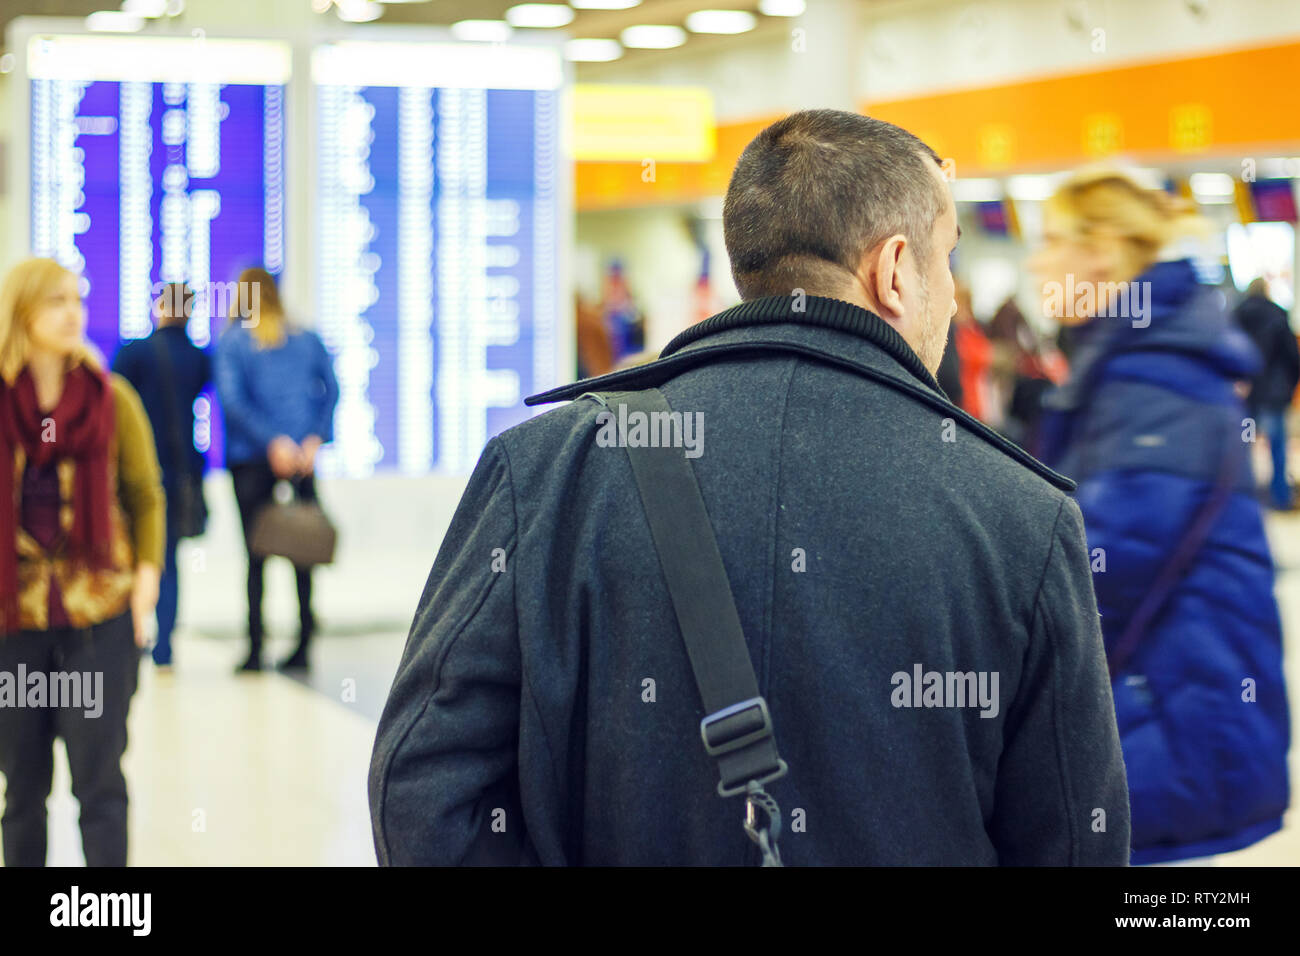 L'homme avec un sac à l'aéroport à l'arrière-plan d'un panneau d'affichage Banque D'Images